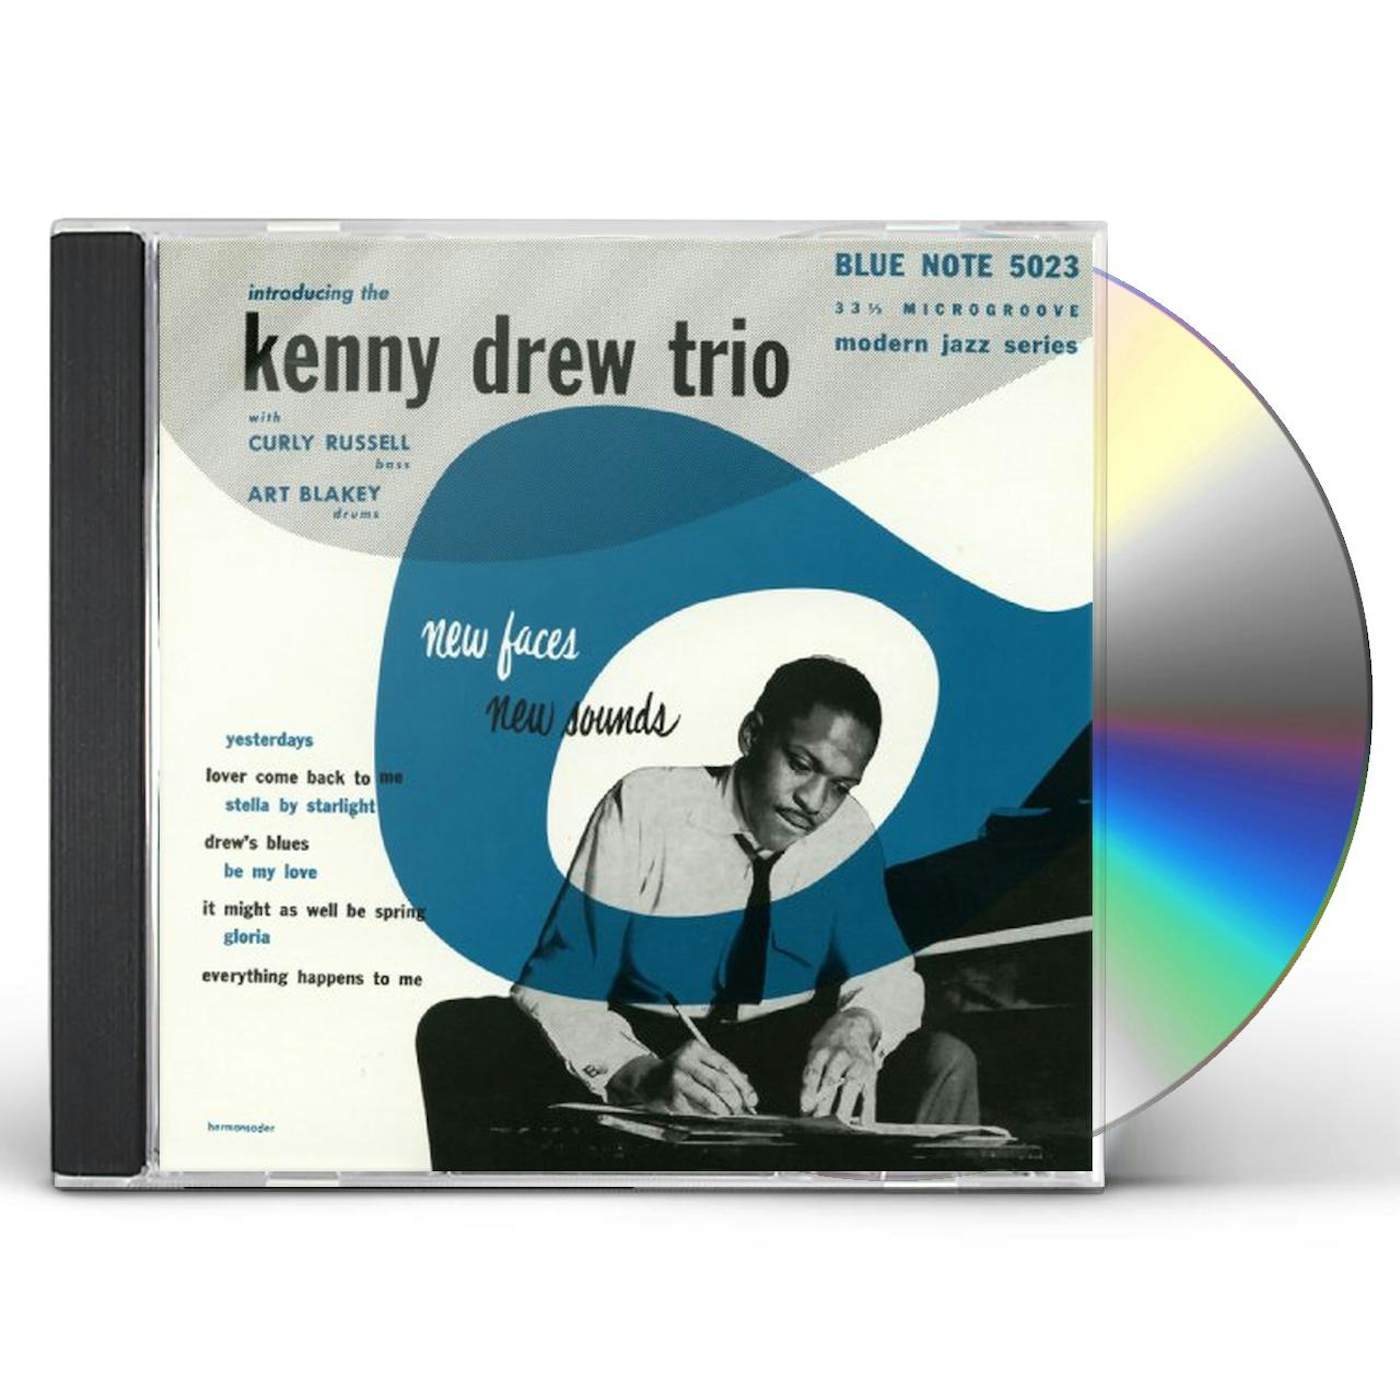 INTRODUCING KENNY DREW TRIO CD